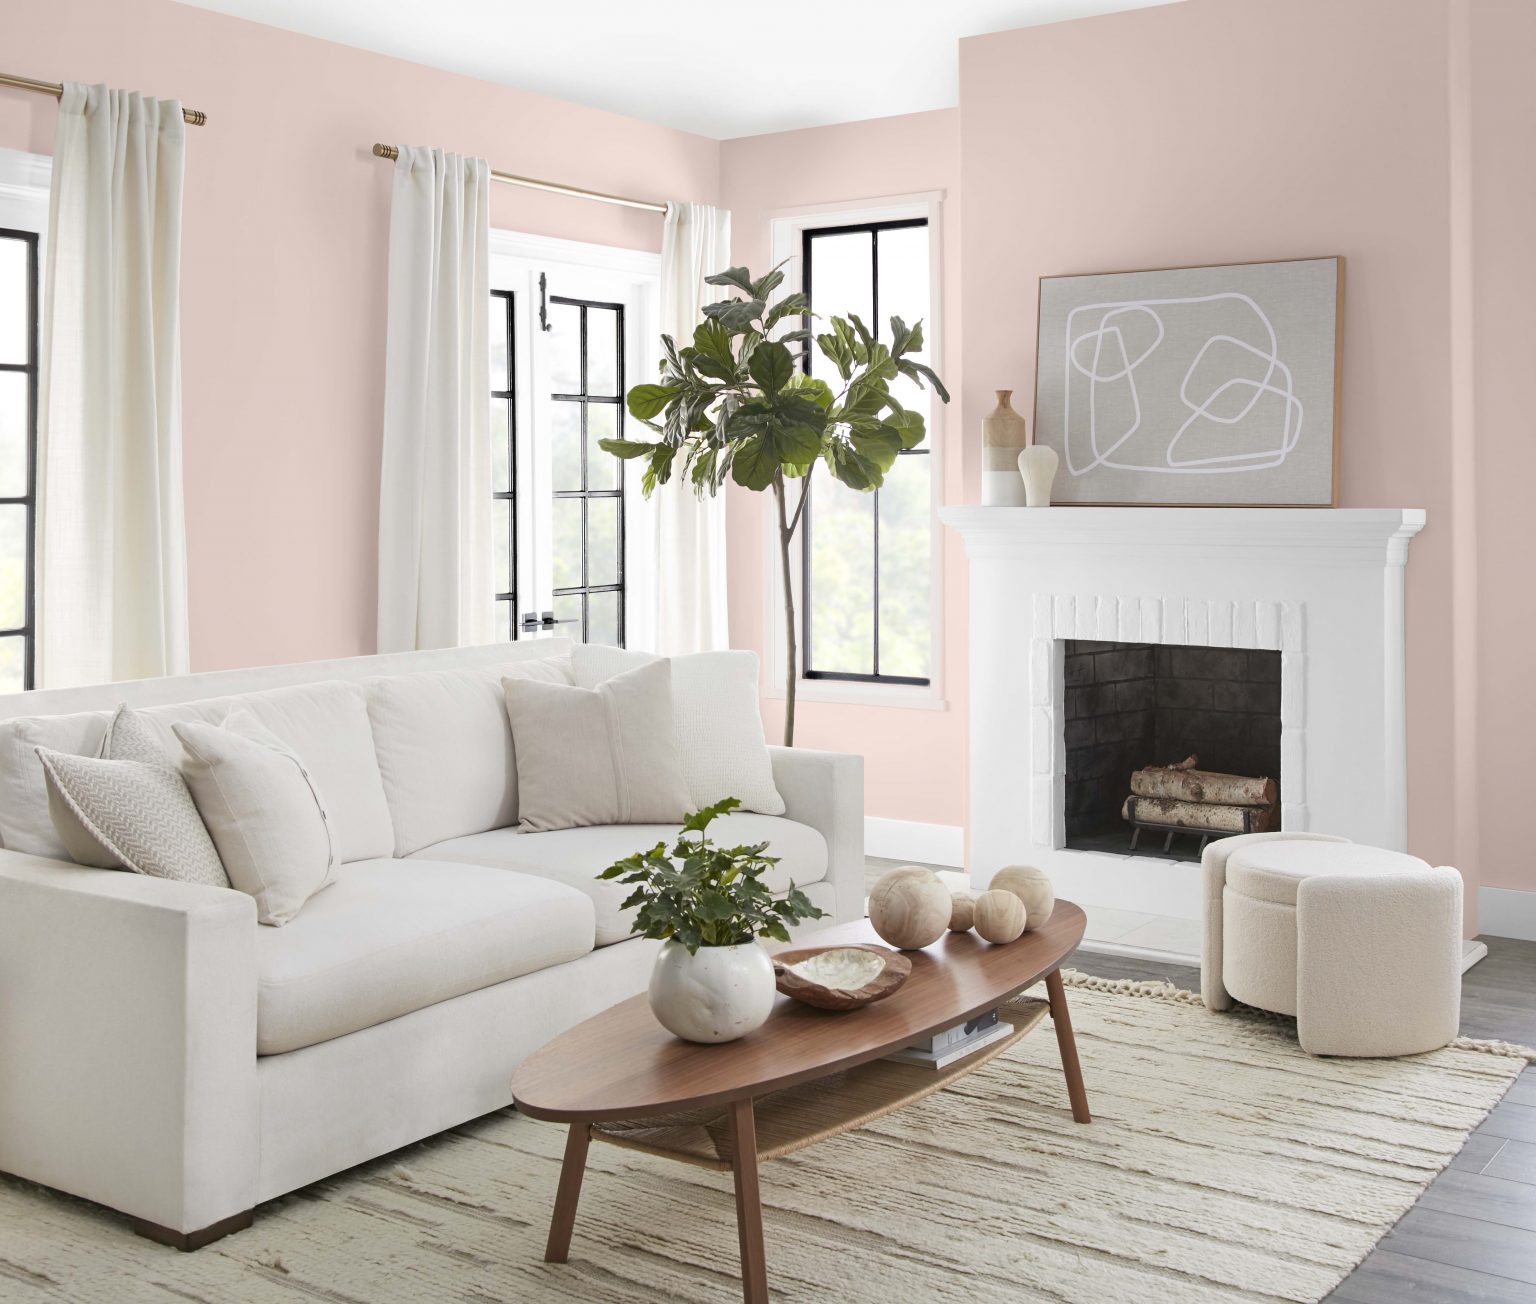 Un salon décontracté dont les murs sont peints dans une couleur neutre rose pâle, avec un foyer blanc, des garnitures de fenêtres noires et blanches et des meubles neutres